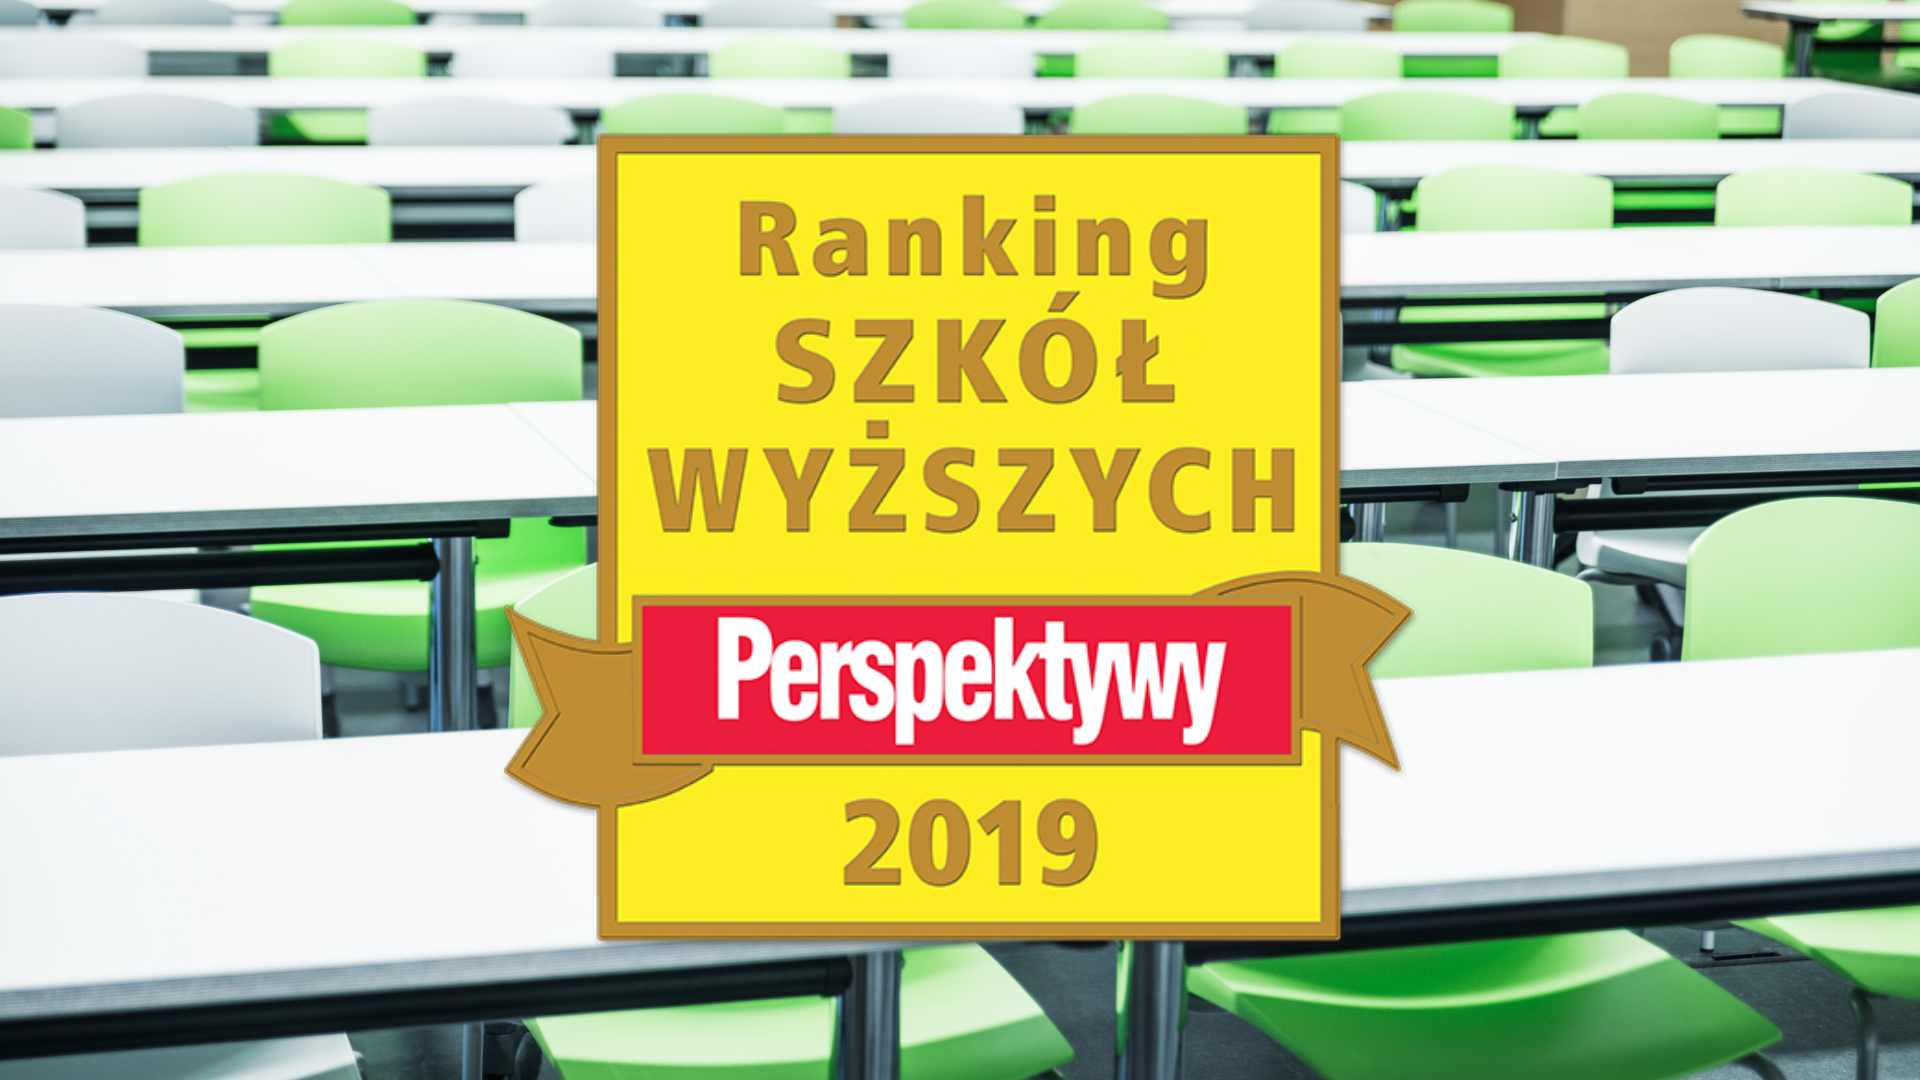 Perspektywy: Chełmski PSWZ na 20. miejscu, Biała Podlaska na podium